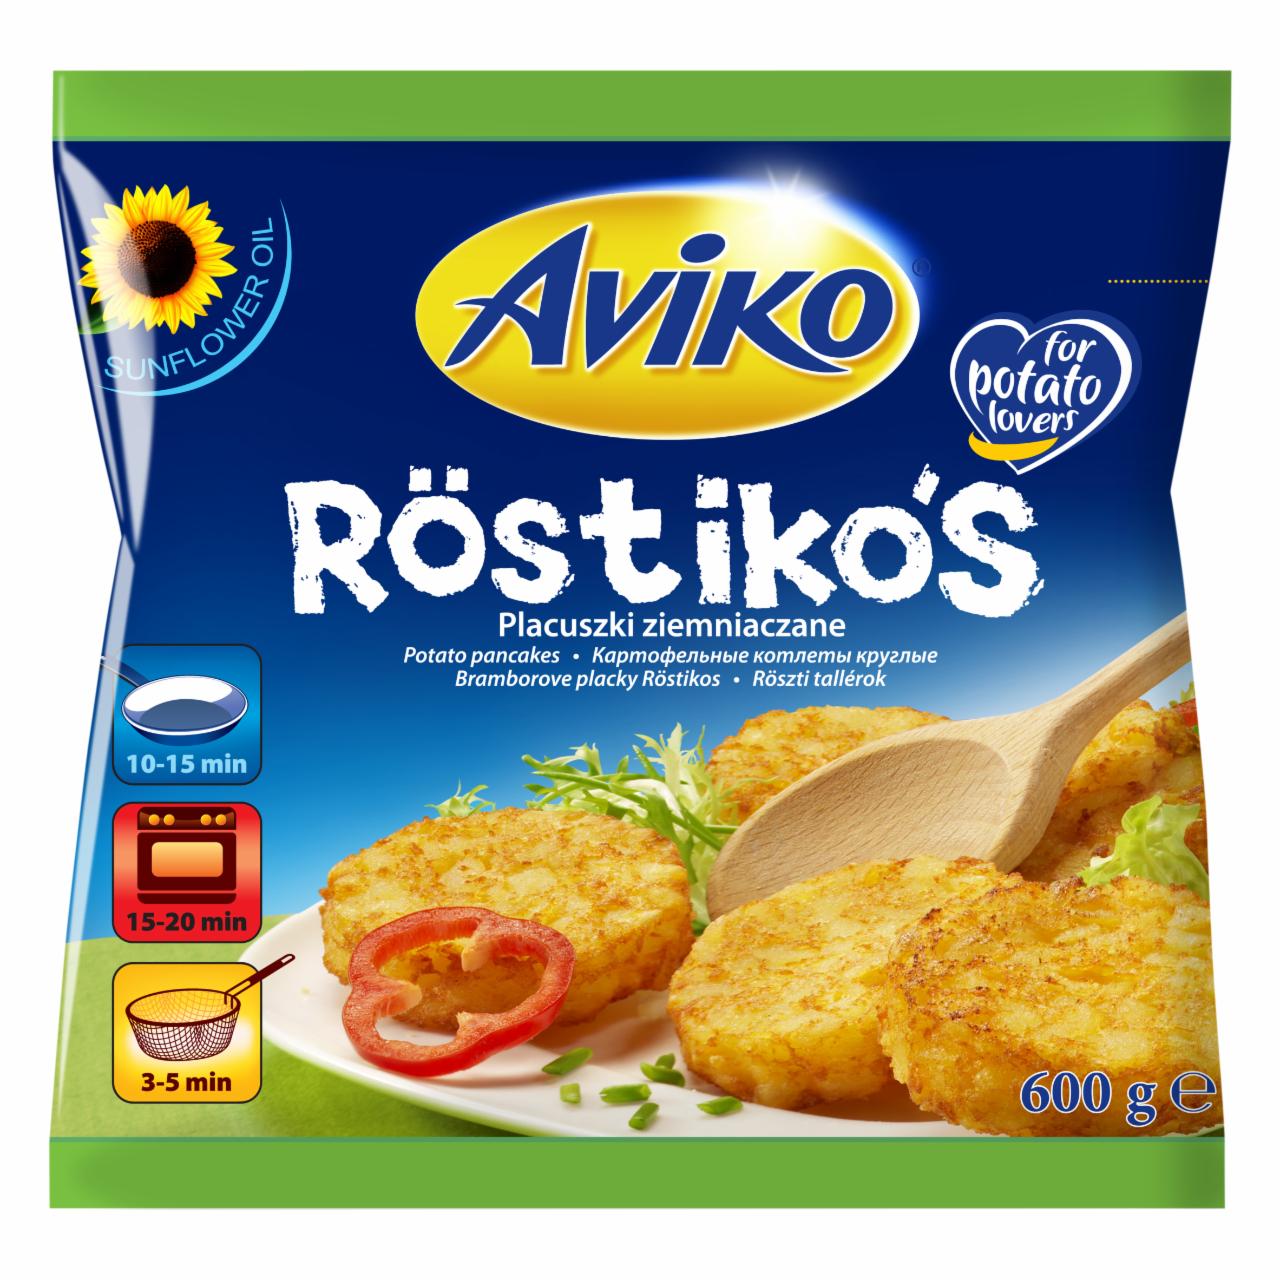 Zdjęcia - Aviko Röstiko's Placuszki ziemniaczane 600 g